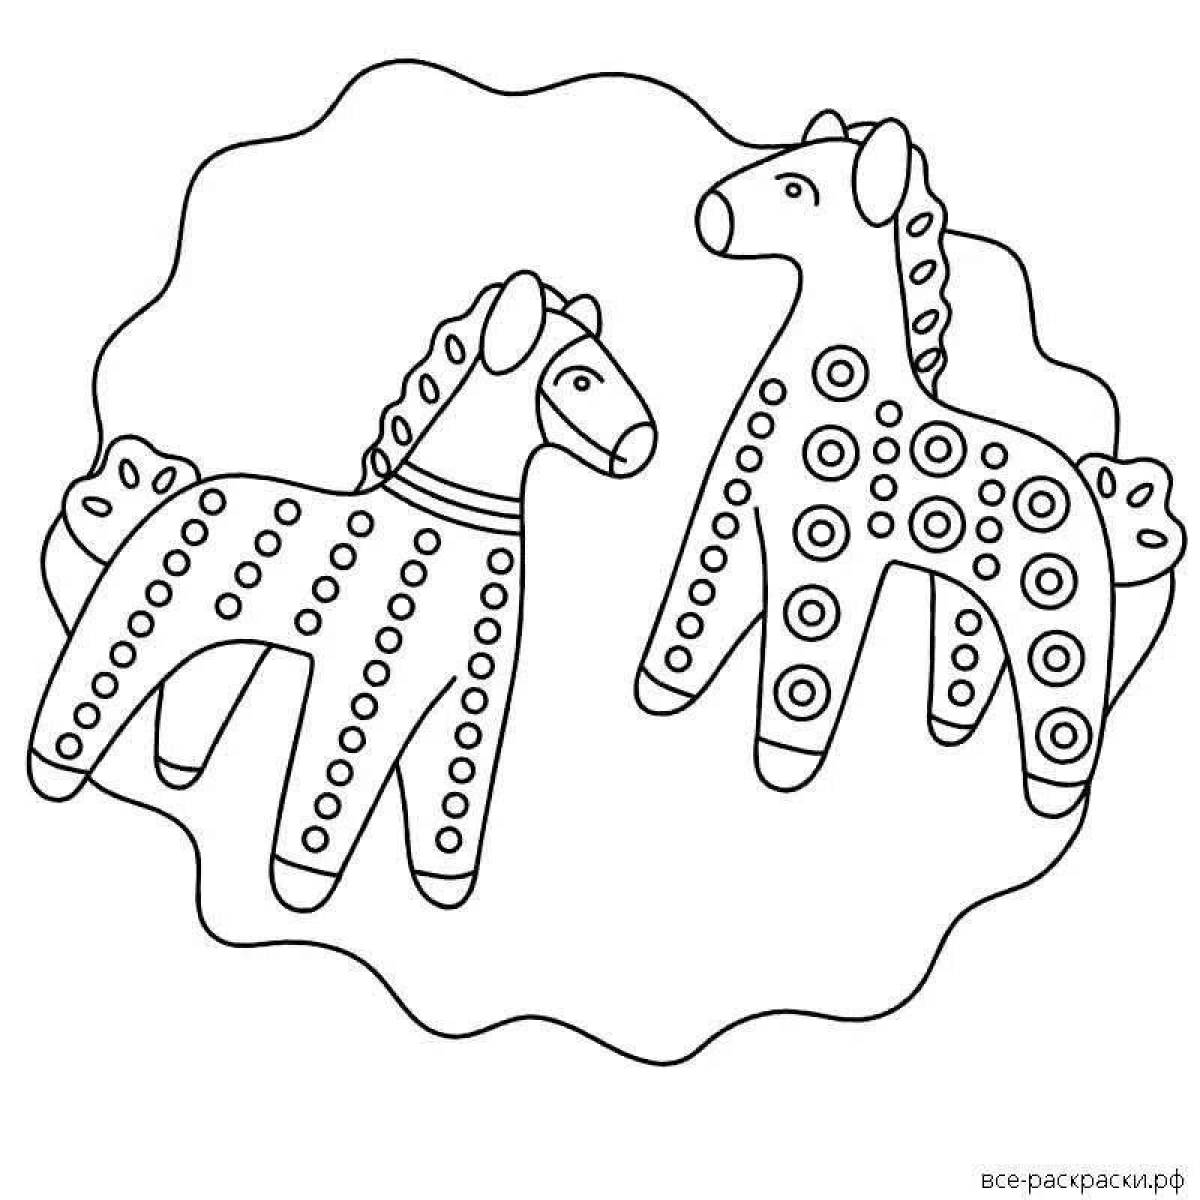 Фото Раскраска величественная лошадь дымковская игрушка